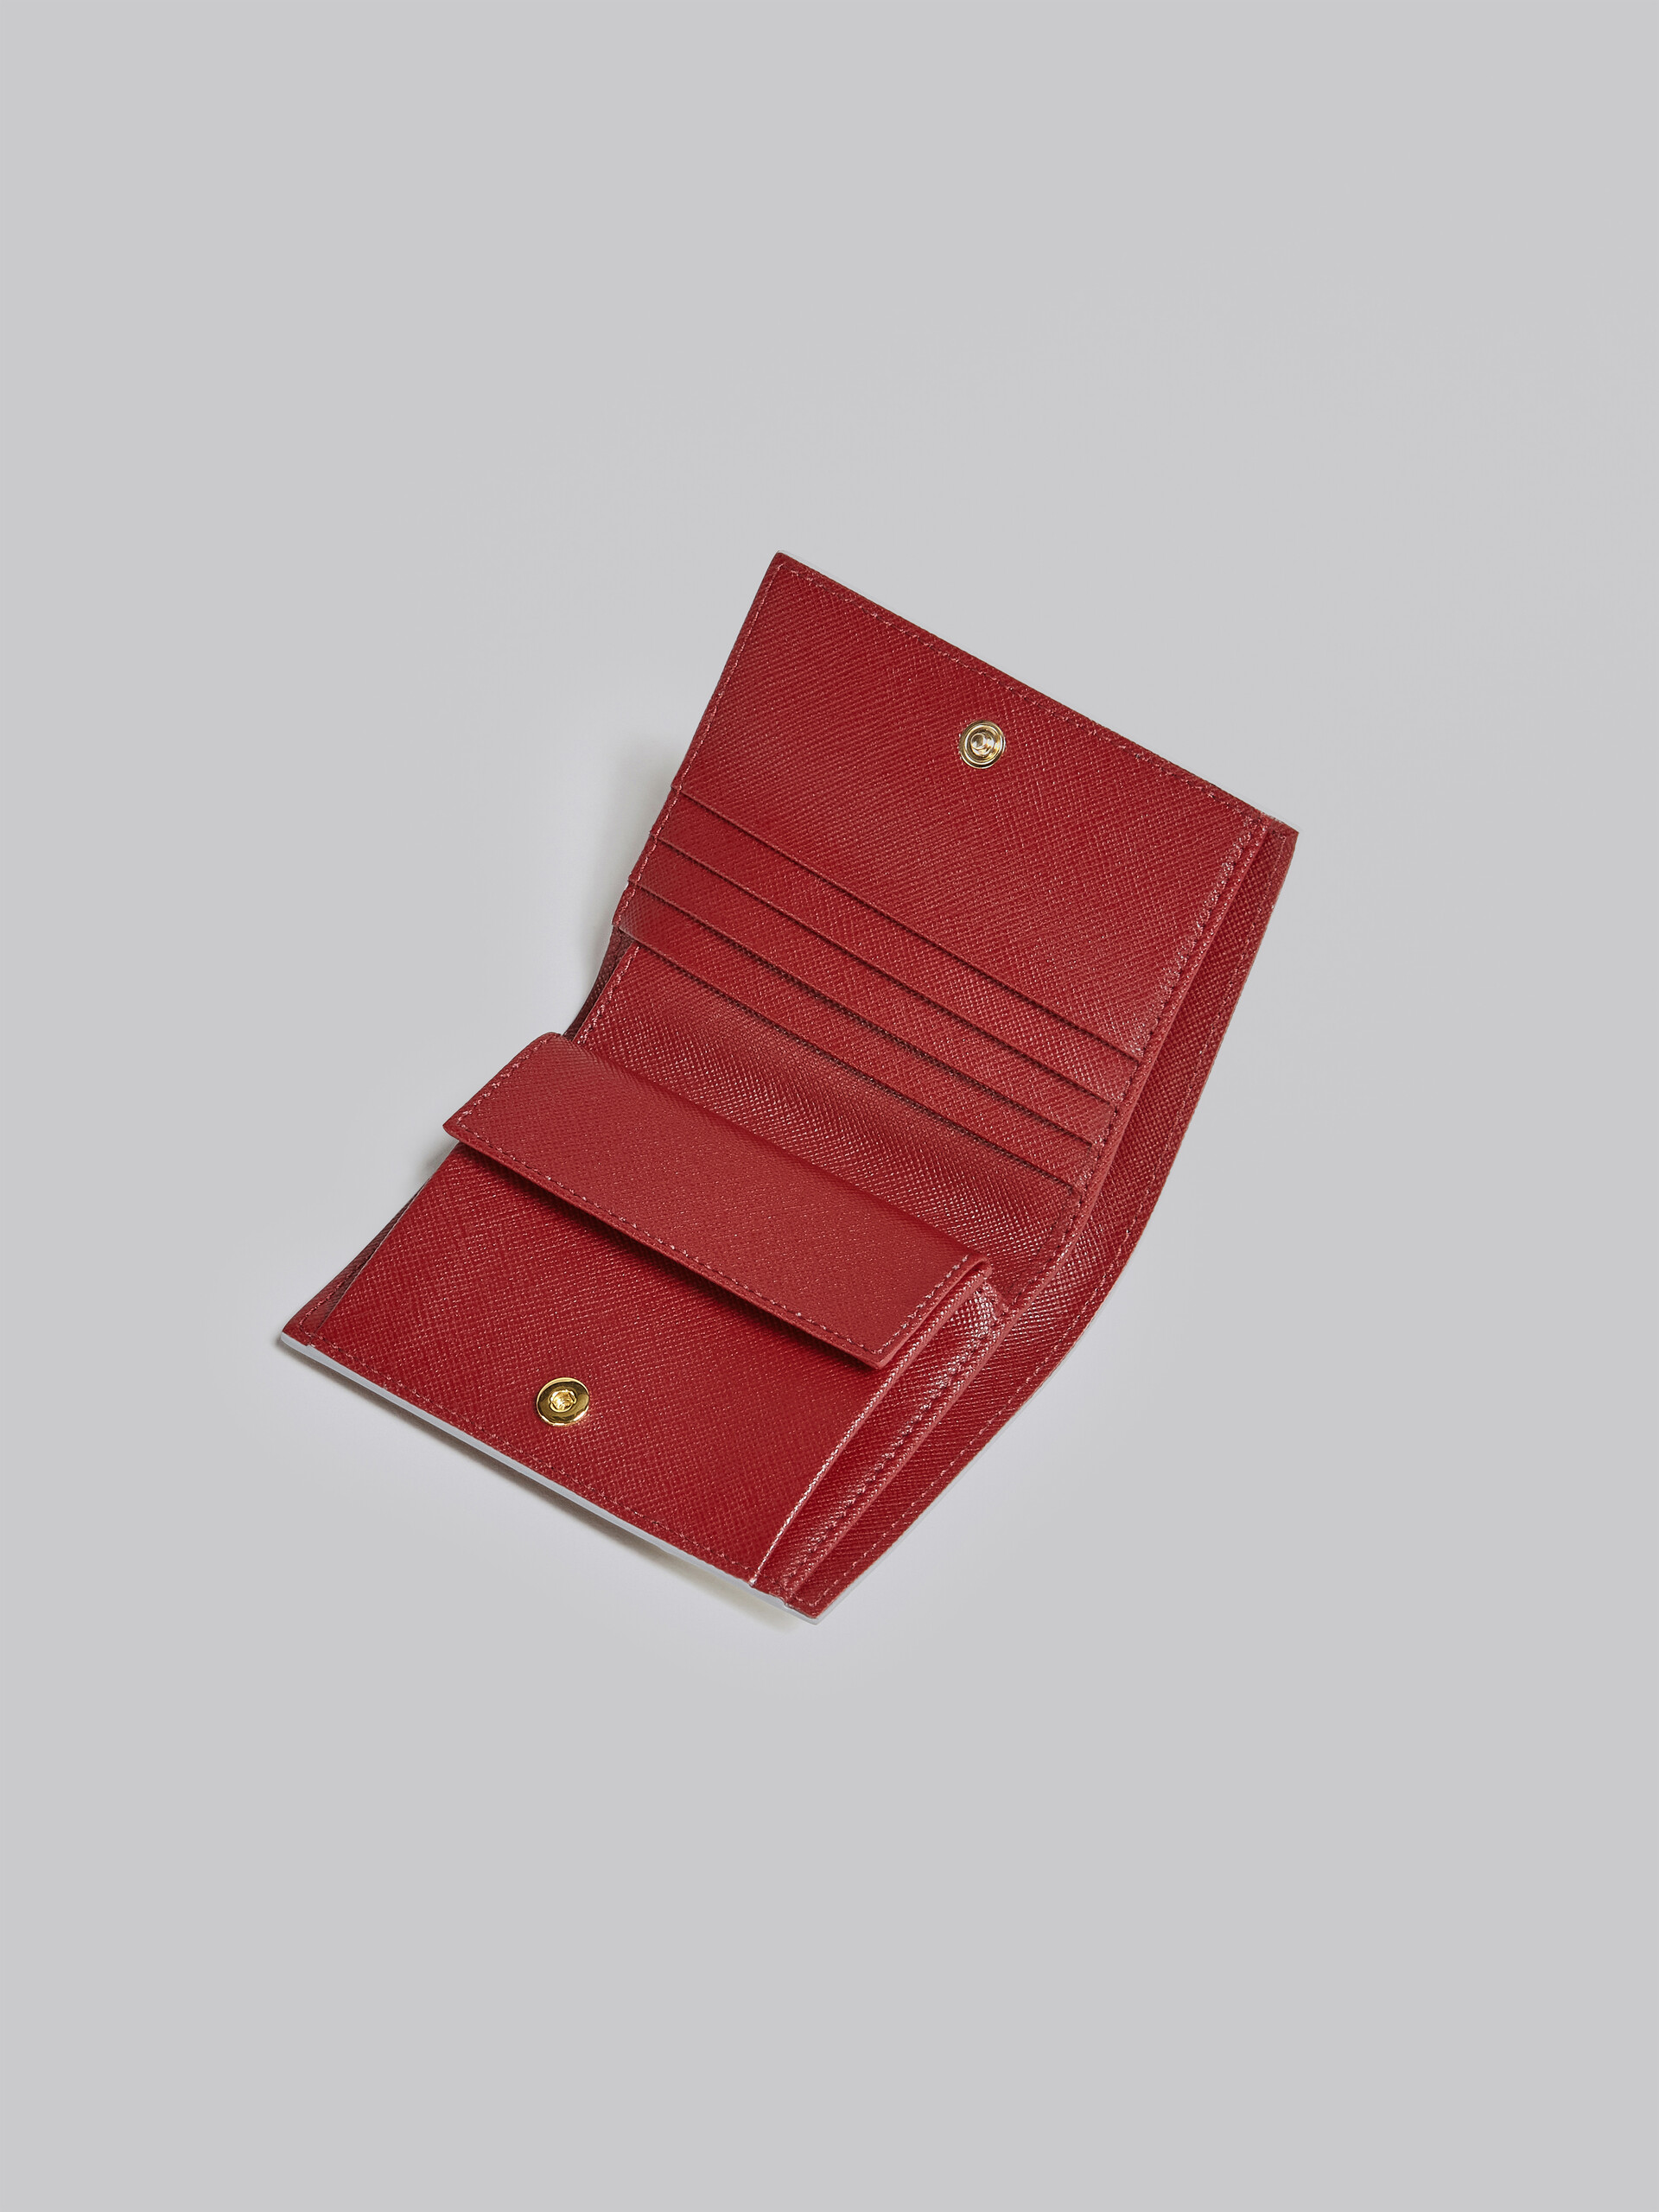 Portafoglio bi-fold in saffiano bianco rosa e rosso - Portafogli - Image 4